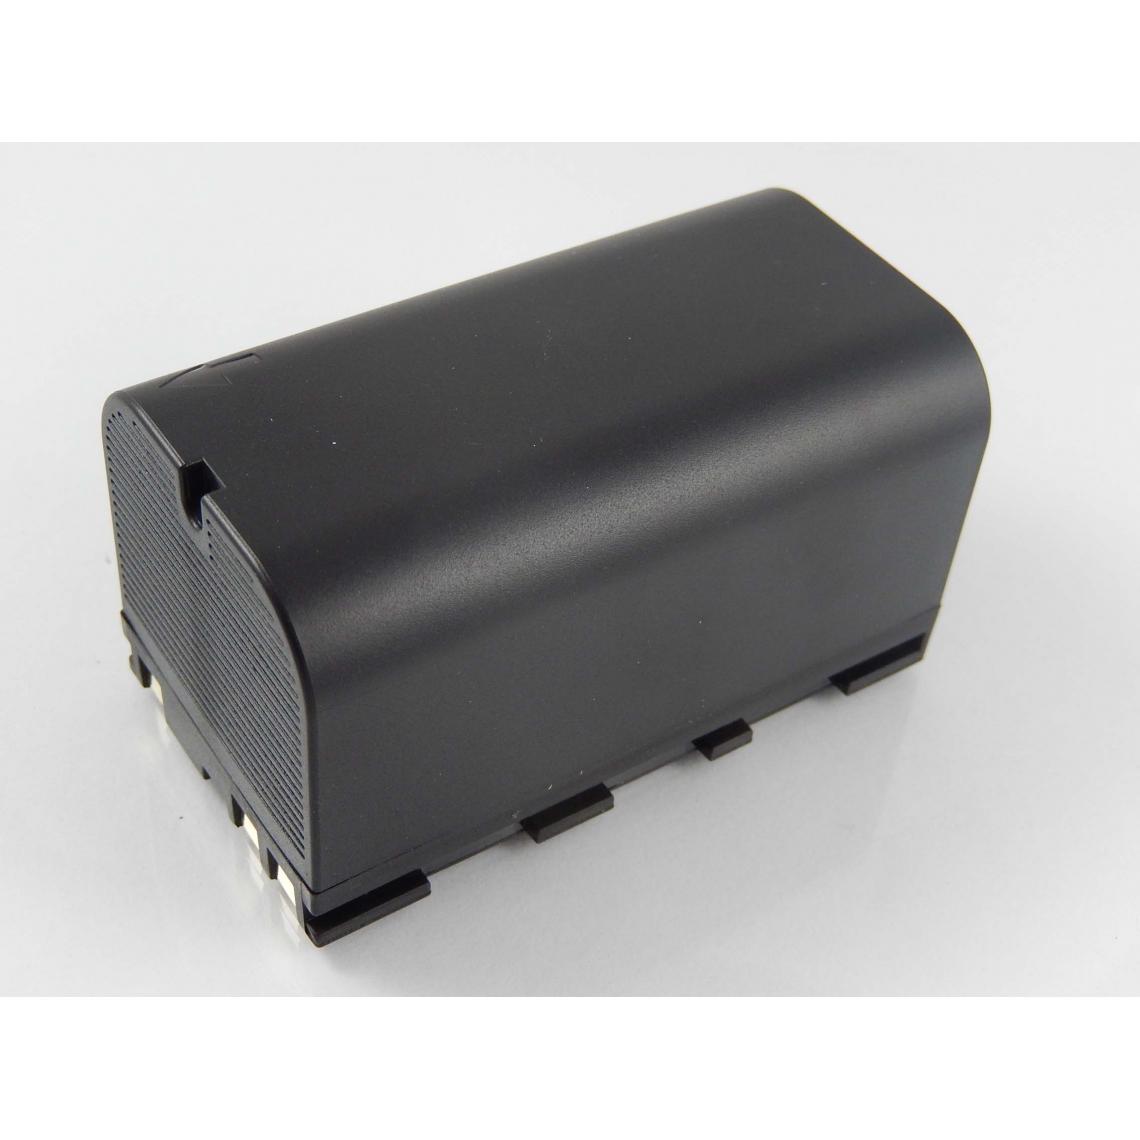 Vhbw - vhbw Batterie compatible avec Leica TCR402, TCR405, TCR406 dispositif de mesure laser, outil de mesure (5600mAh, 7,4V, Li-ion) - Piles rechargeables